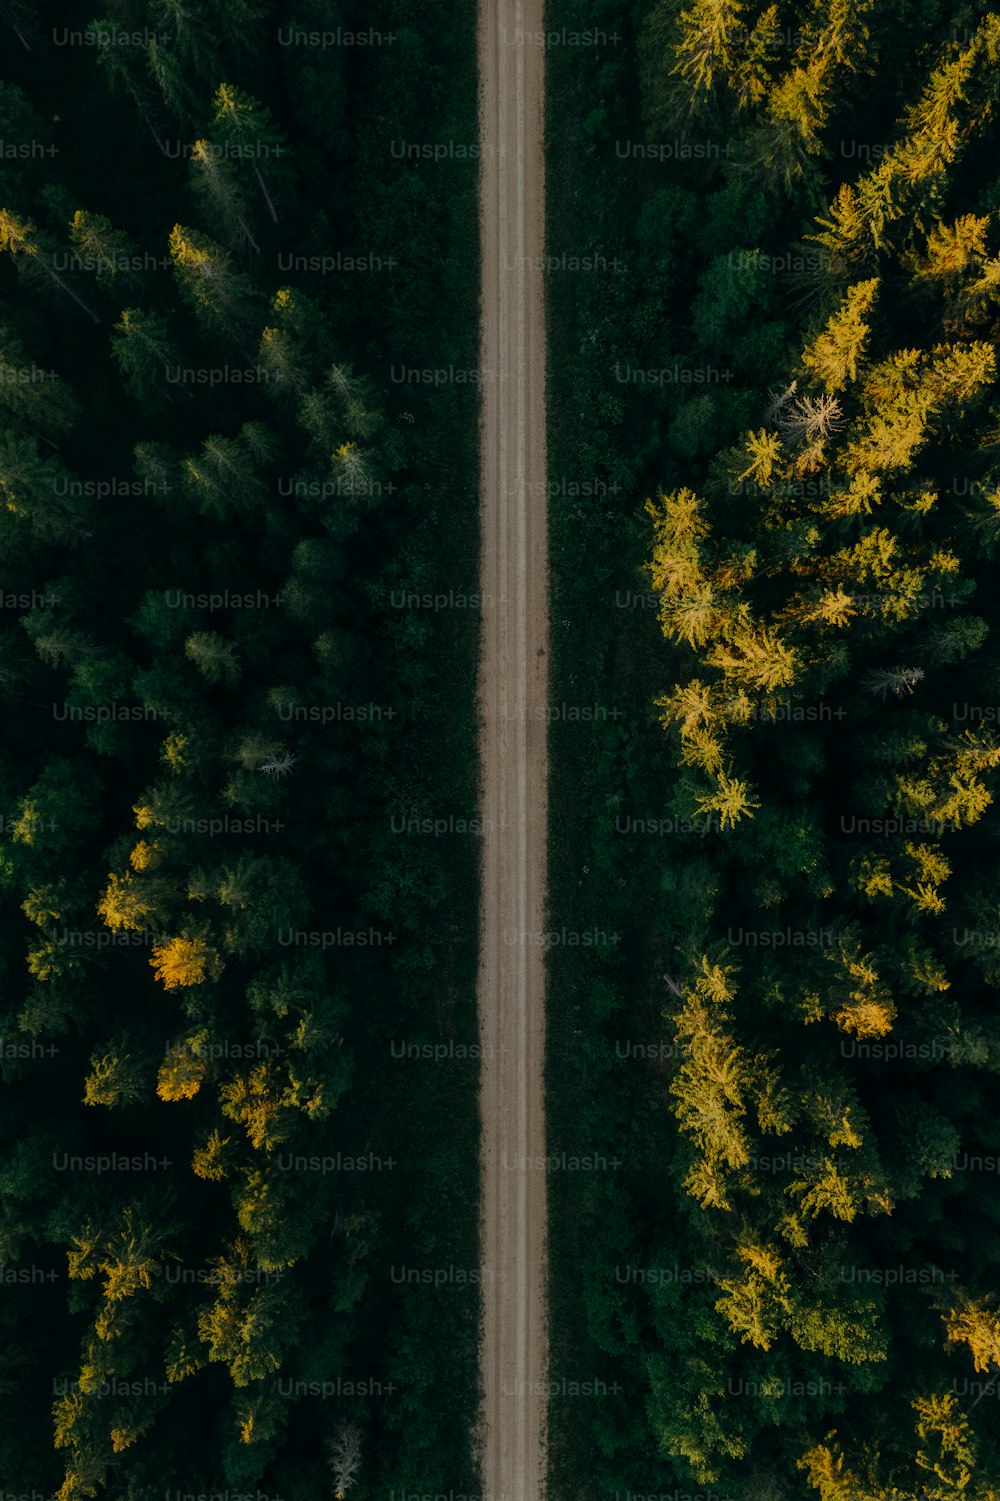 Vue aérienne d’une route entourée d’arbres